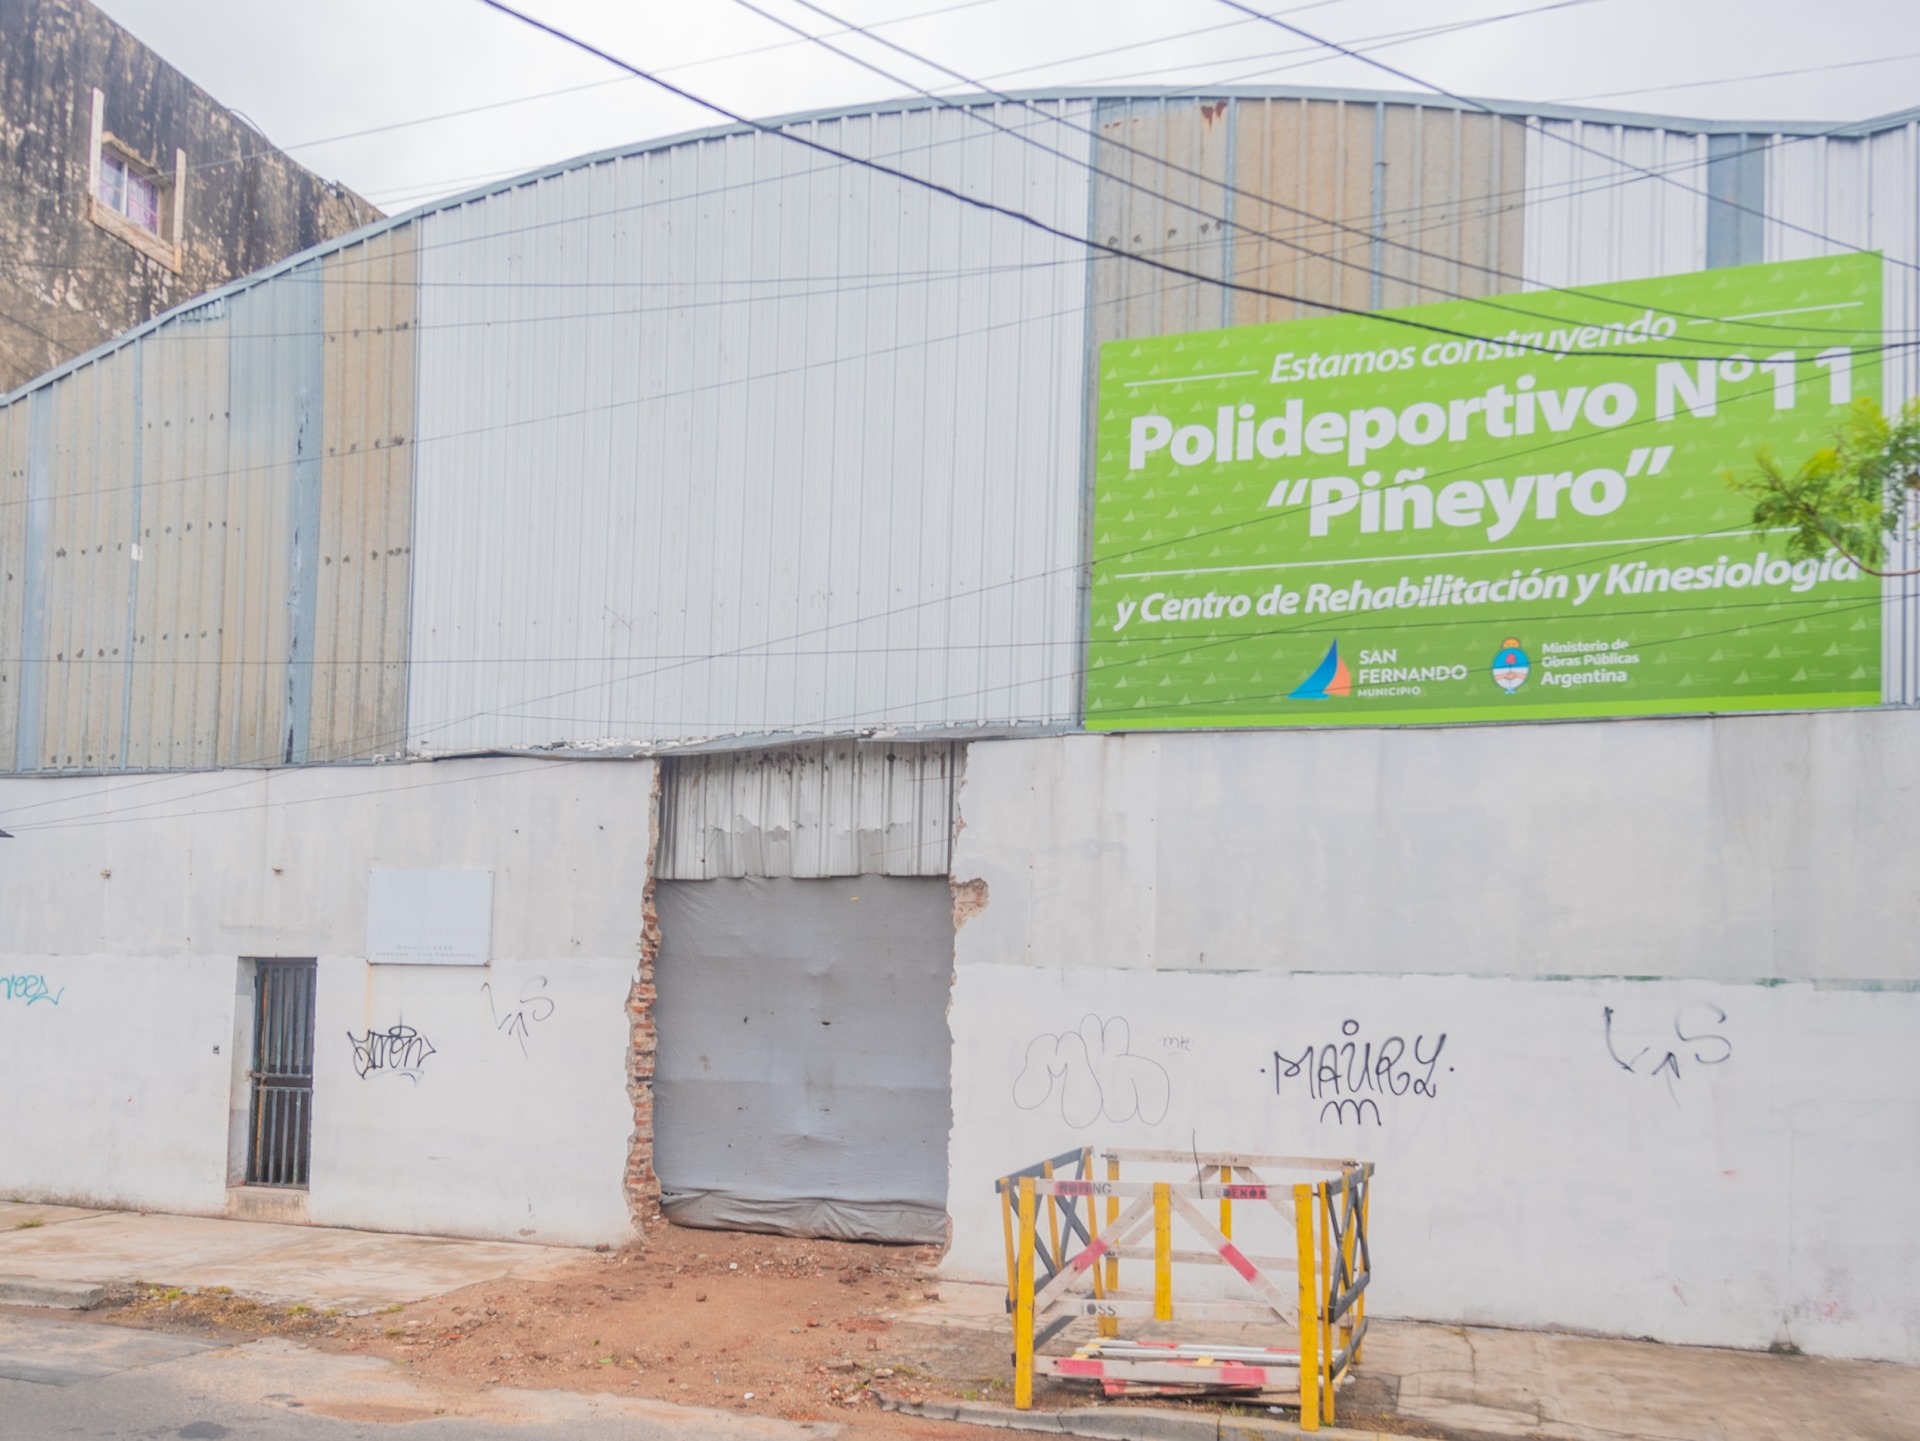 San Fernando avanza con la obra del Polideportivo N°11 con Centro de Rehabilitación y Kinesiología